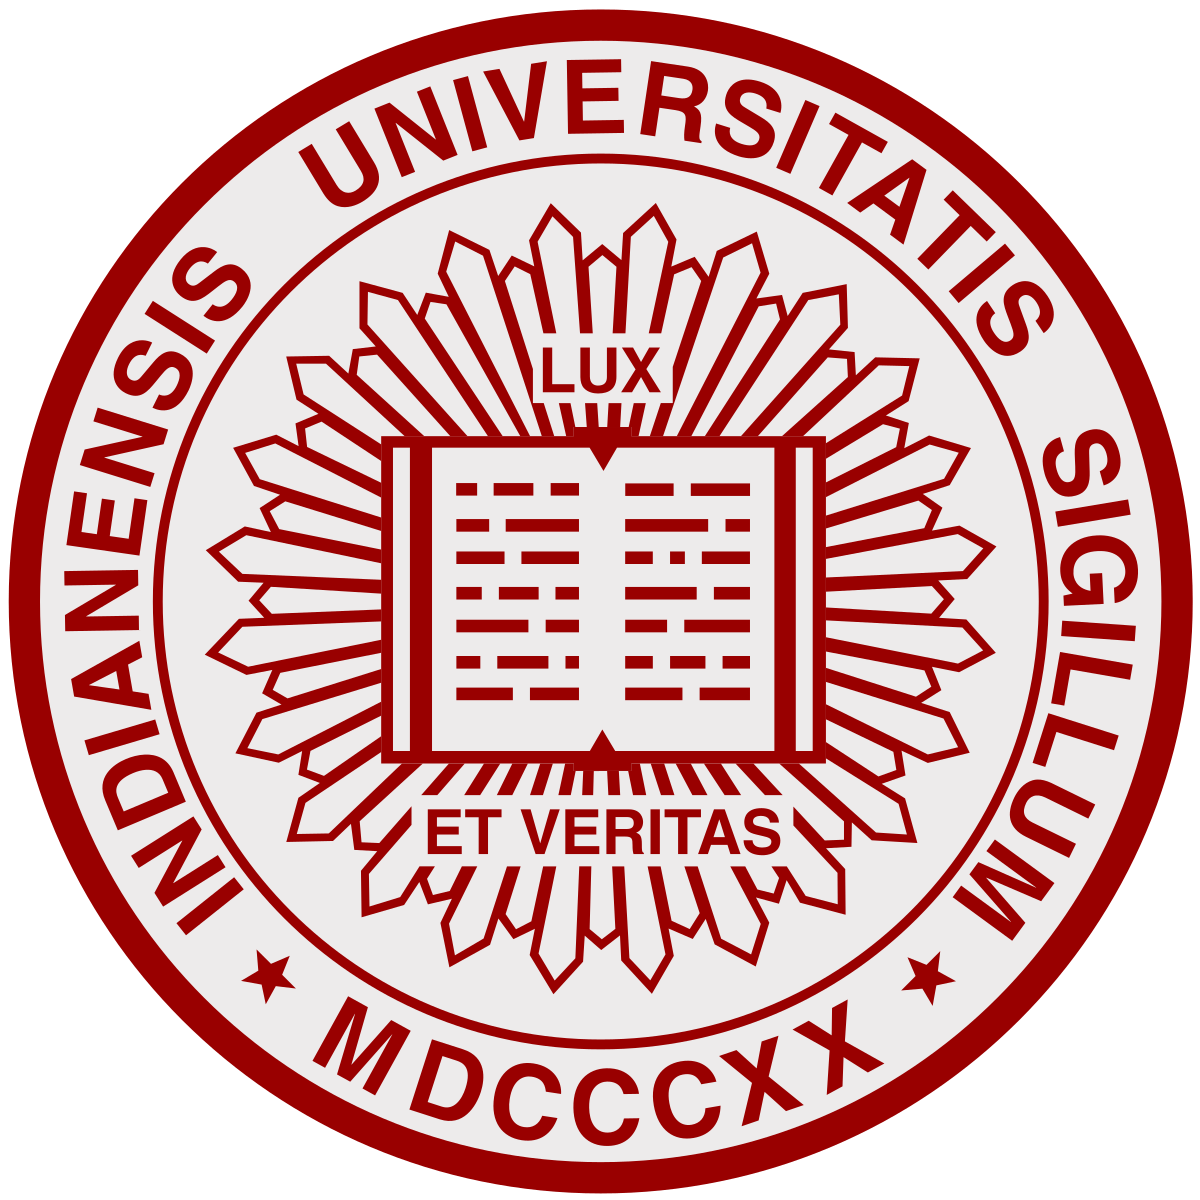 Iusb Logo - Indiana University